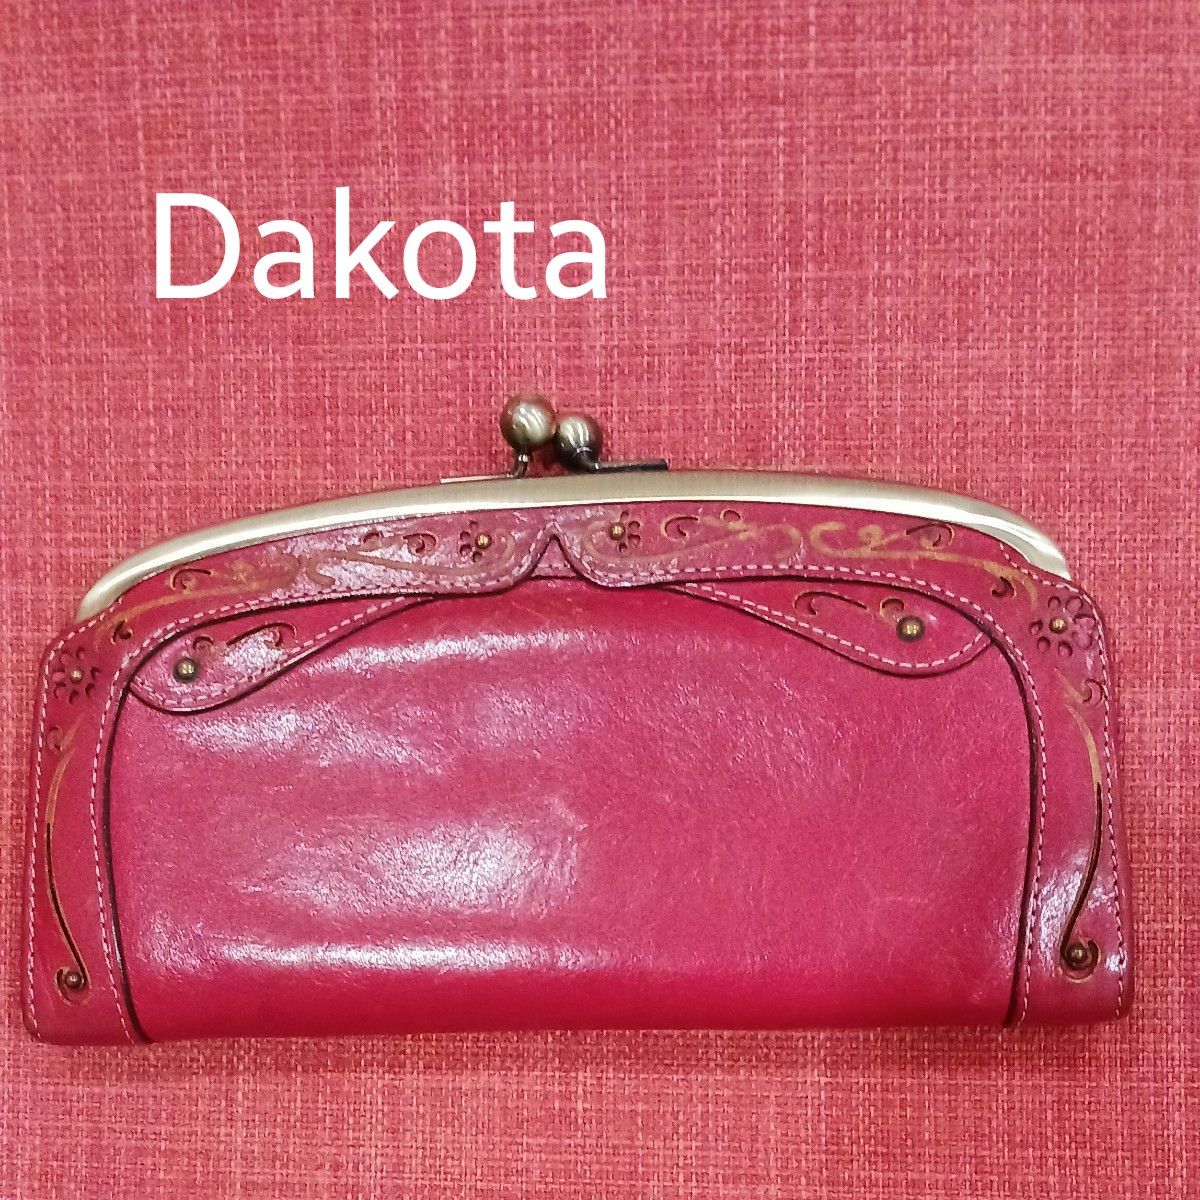 Dakota 赤のがま口タイプの長財布 